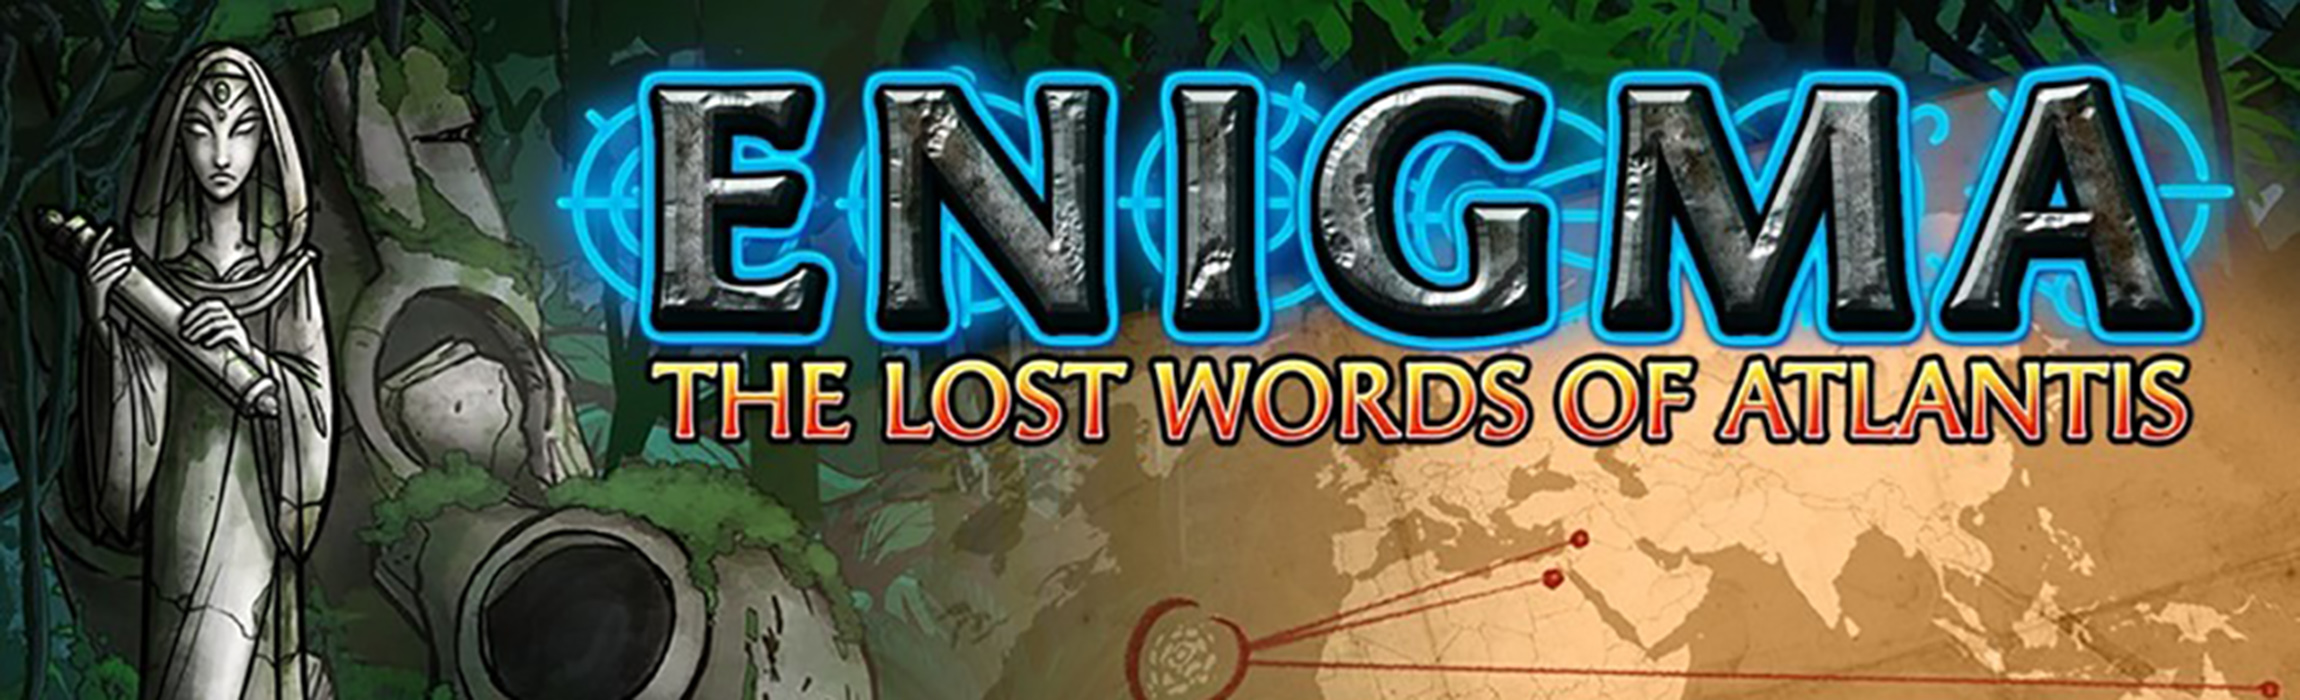 Enigma Lost Words of Atlantis